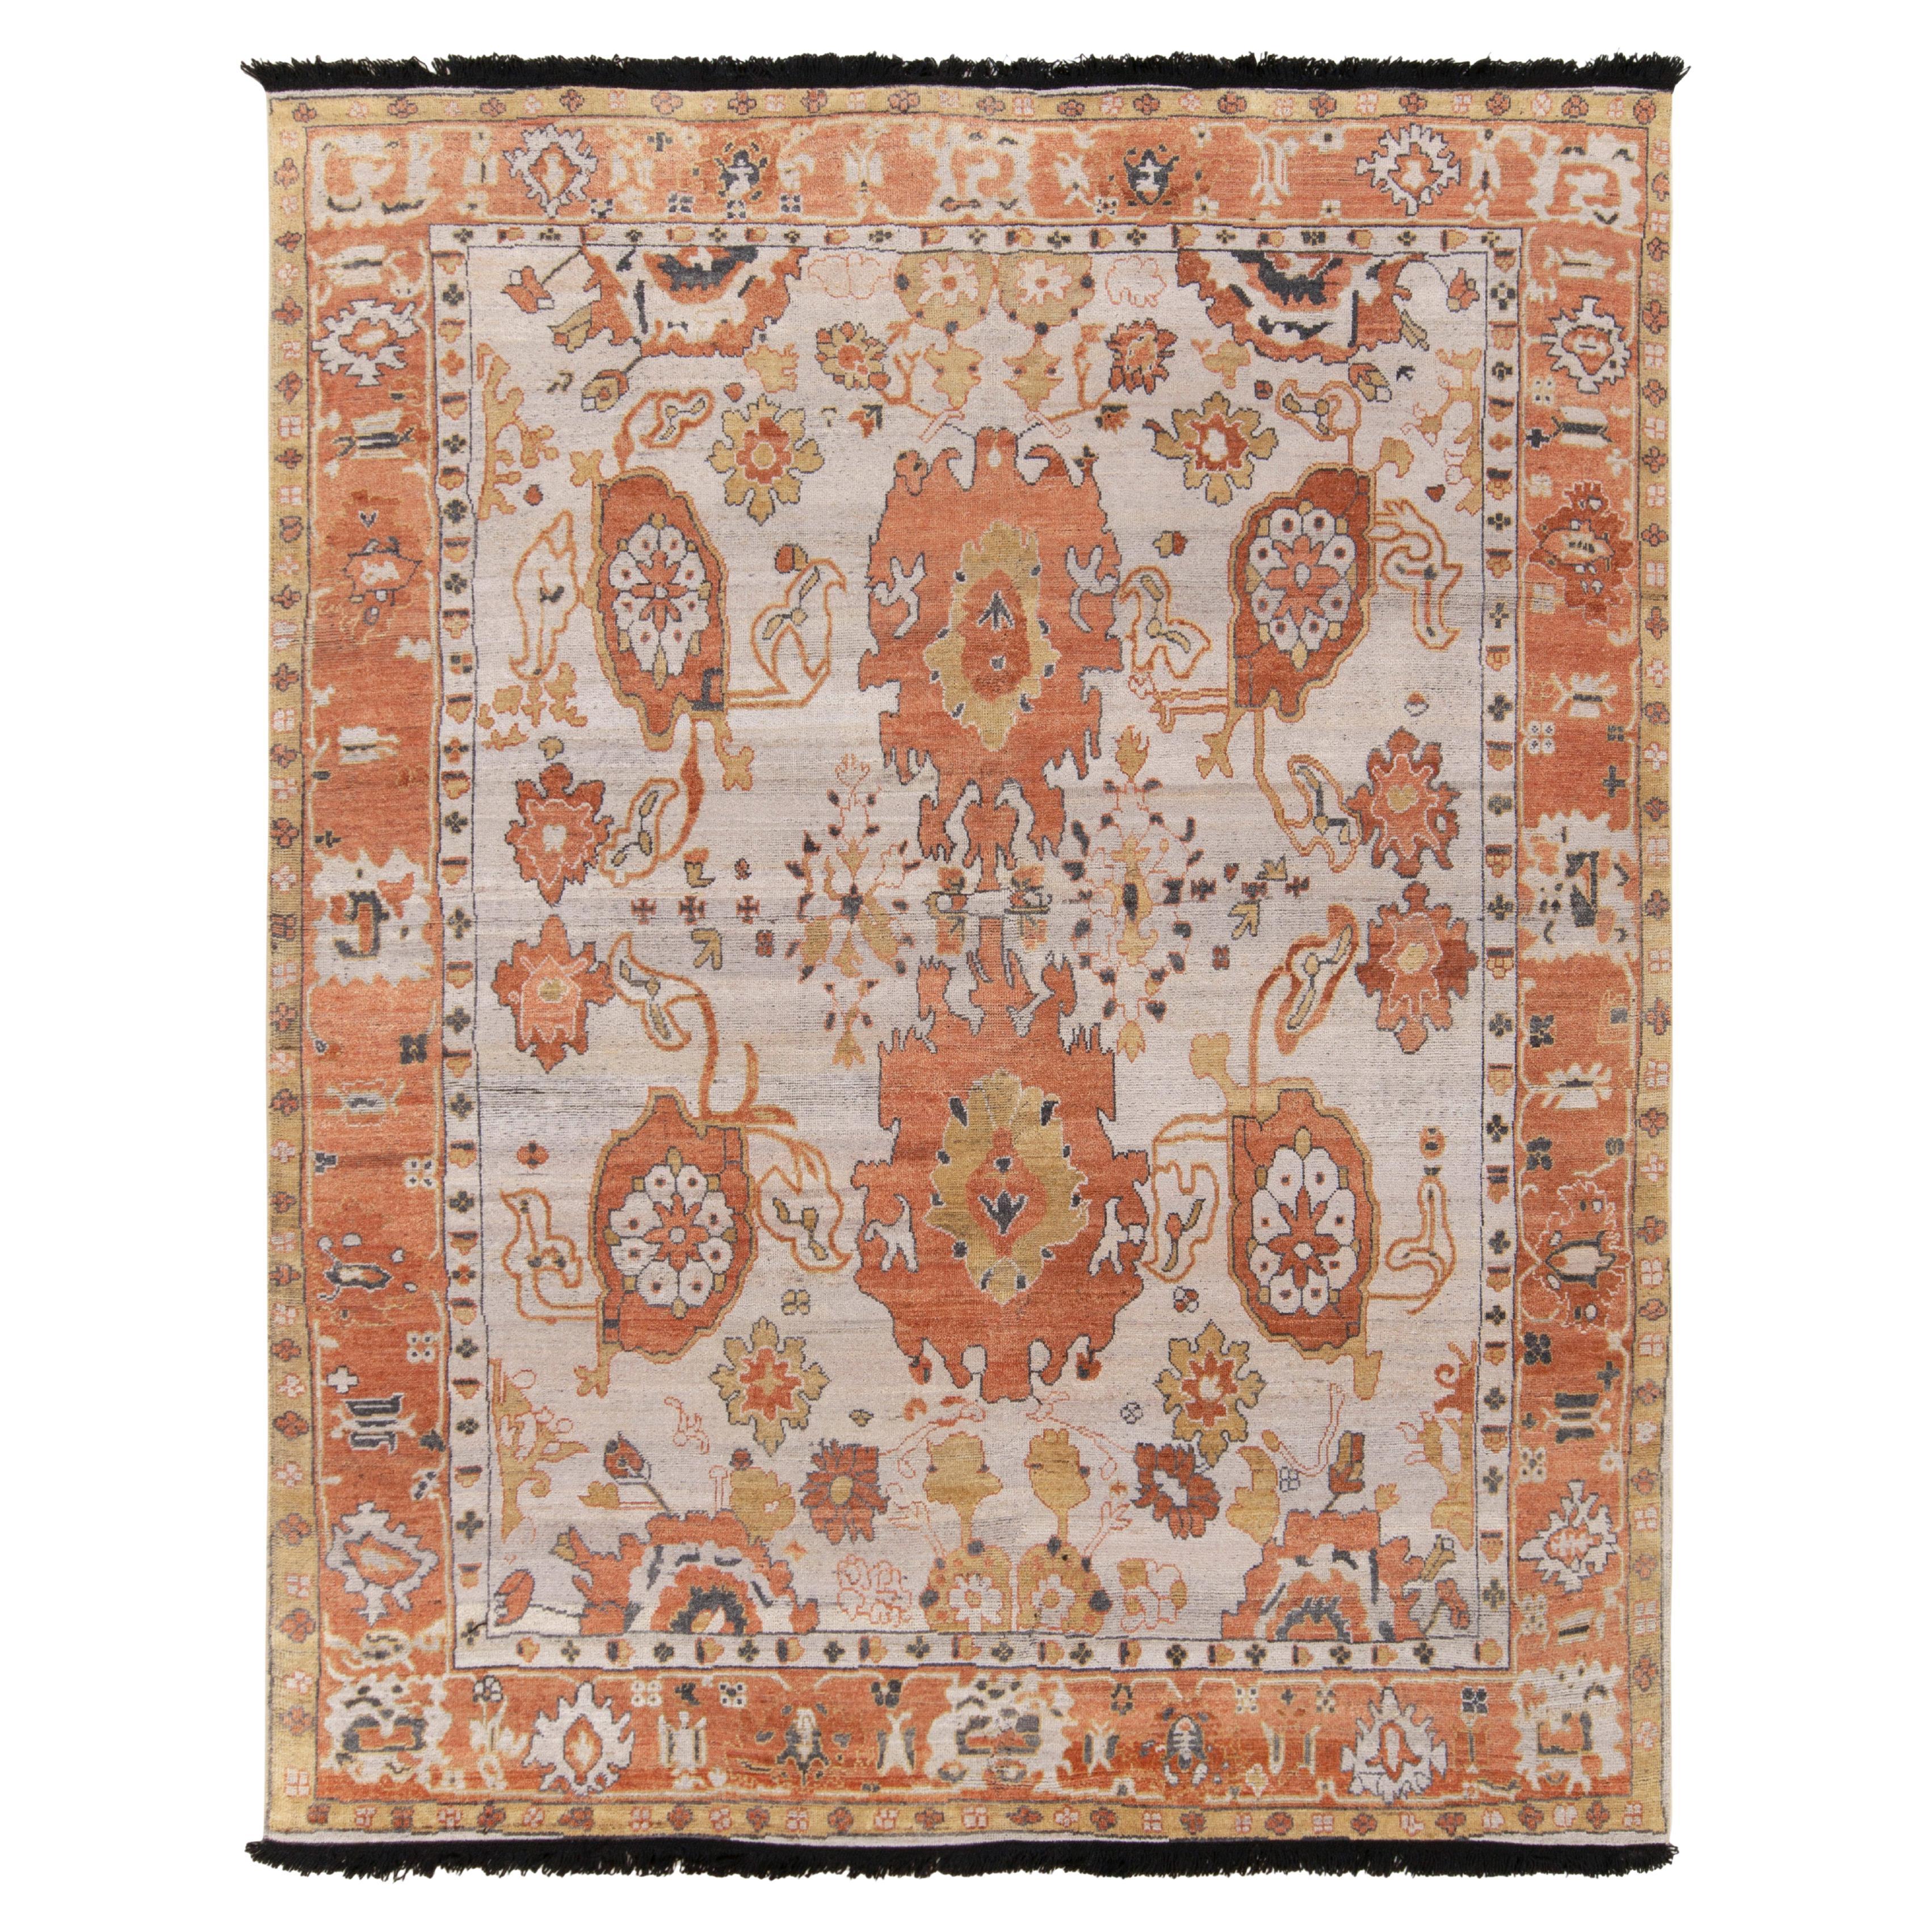 Teppich & Kelim-Teppich im Oushak-Stil aus den 1900er Jahren mit weißem, orangefarbenem und goldenem Blumenmuster